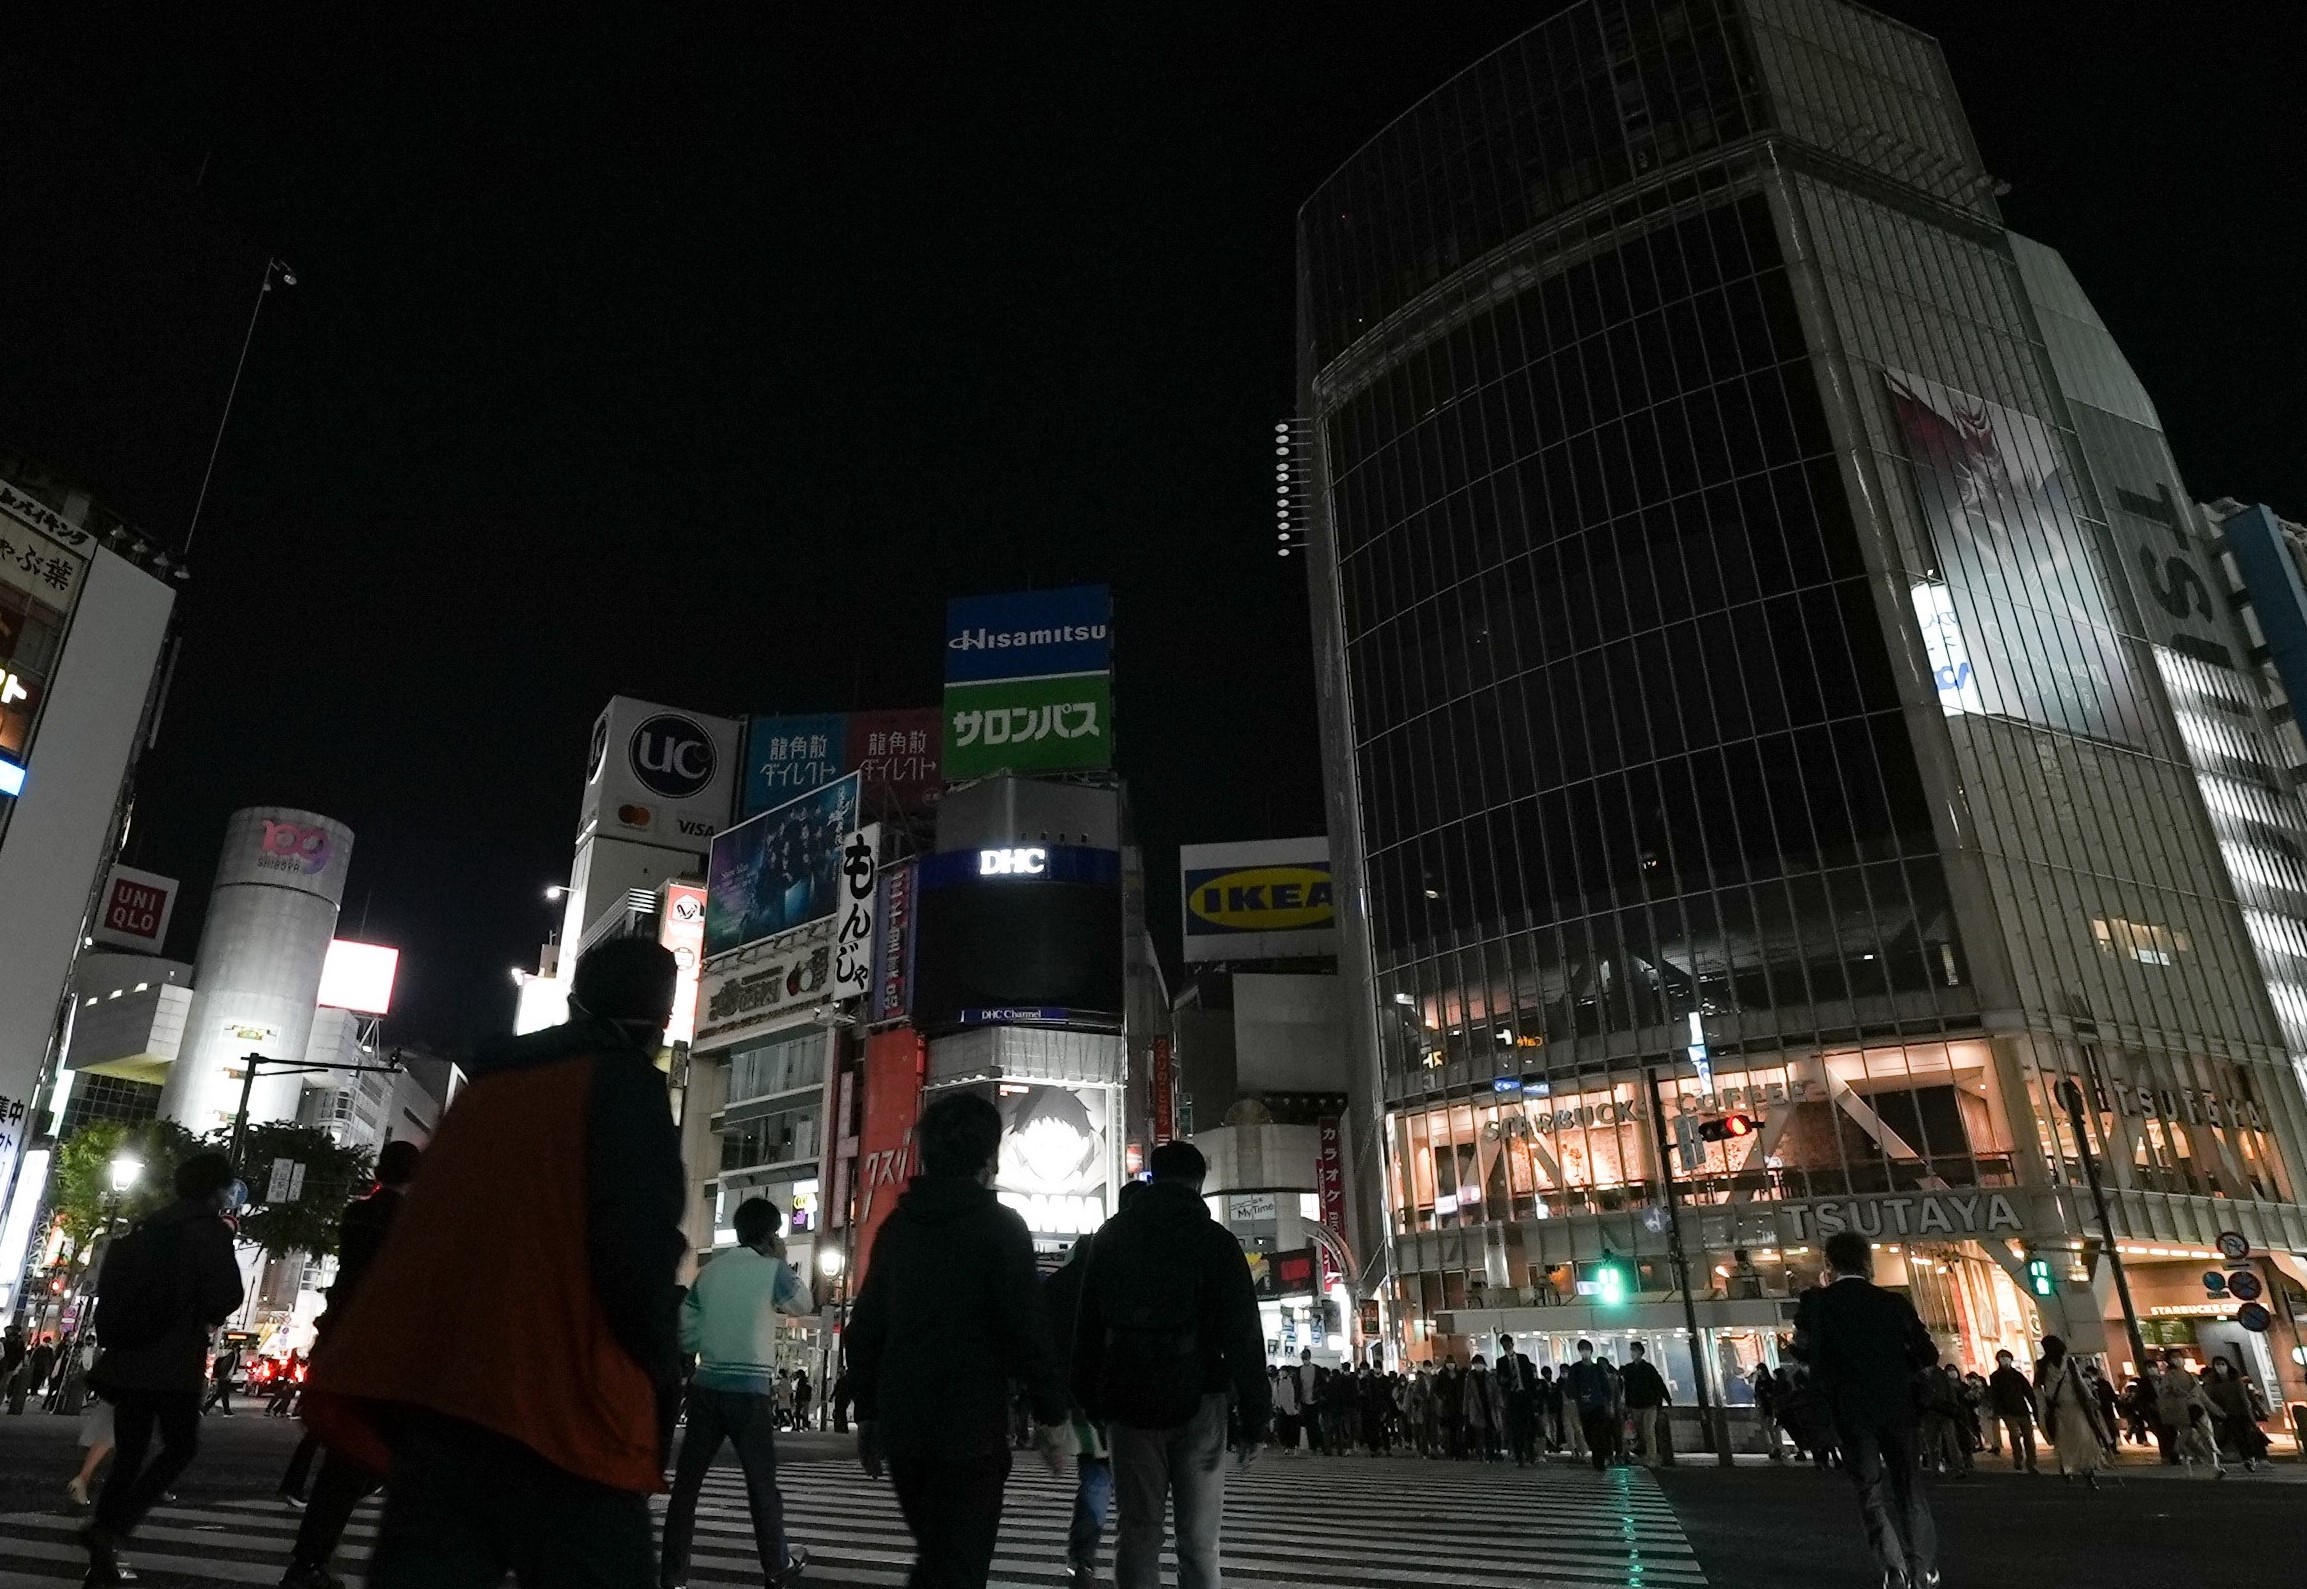 都の要請で午後8時を過ぎると大型スクリーンなどの照明が消された（４月２７日撮影、東京渋谷のスクランブル交差点）